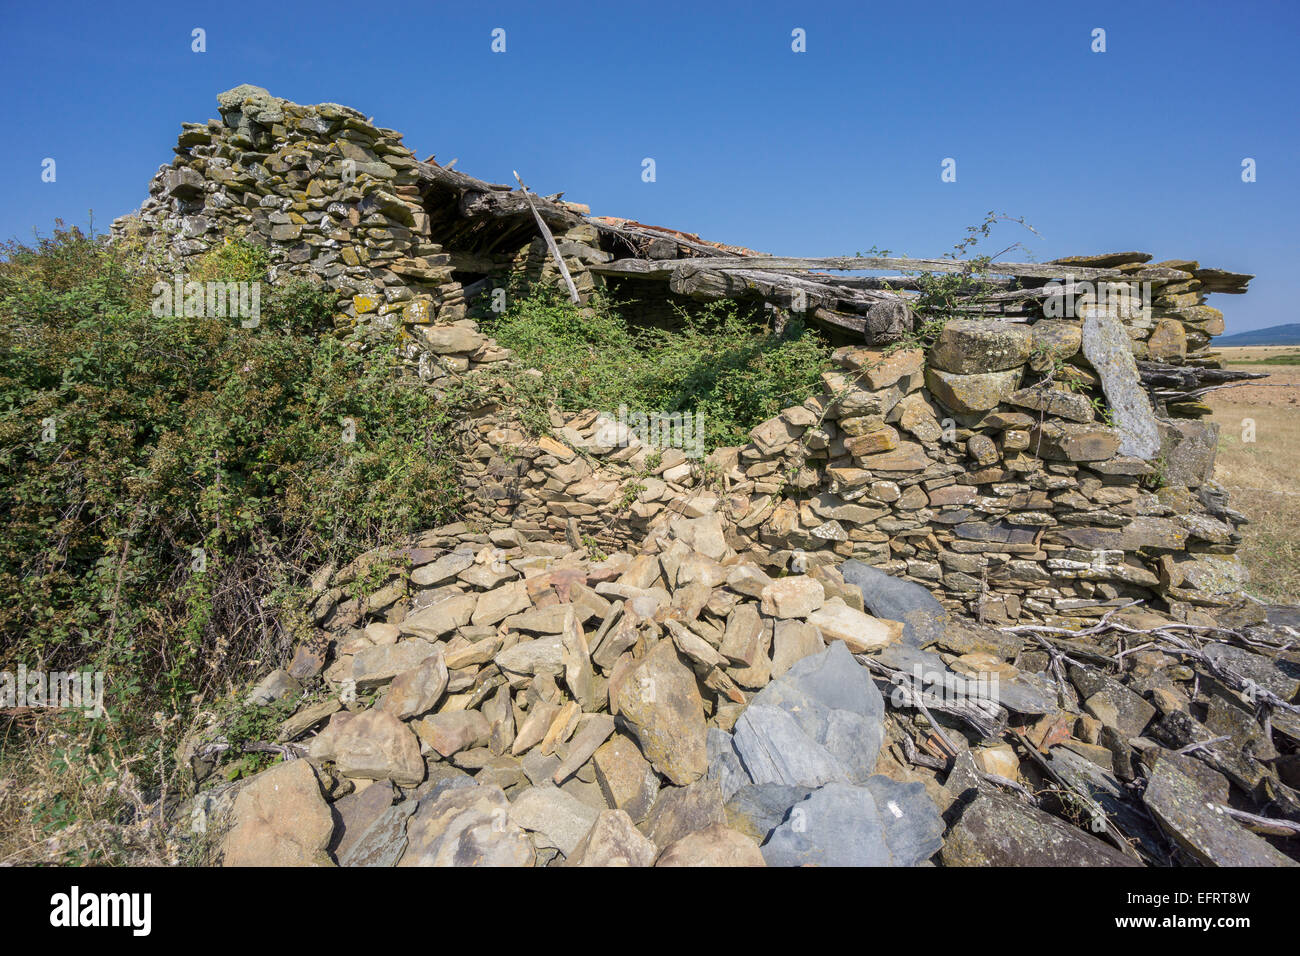 Vieille maison abandonnée faite avec des pierres, vue d'angle Banque D'Images